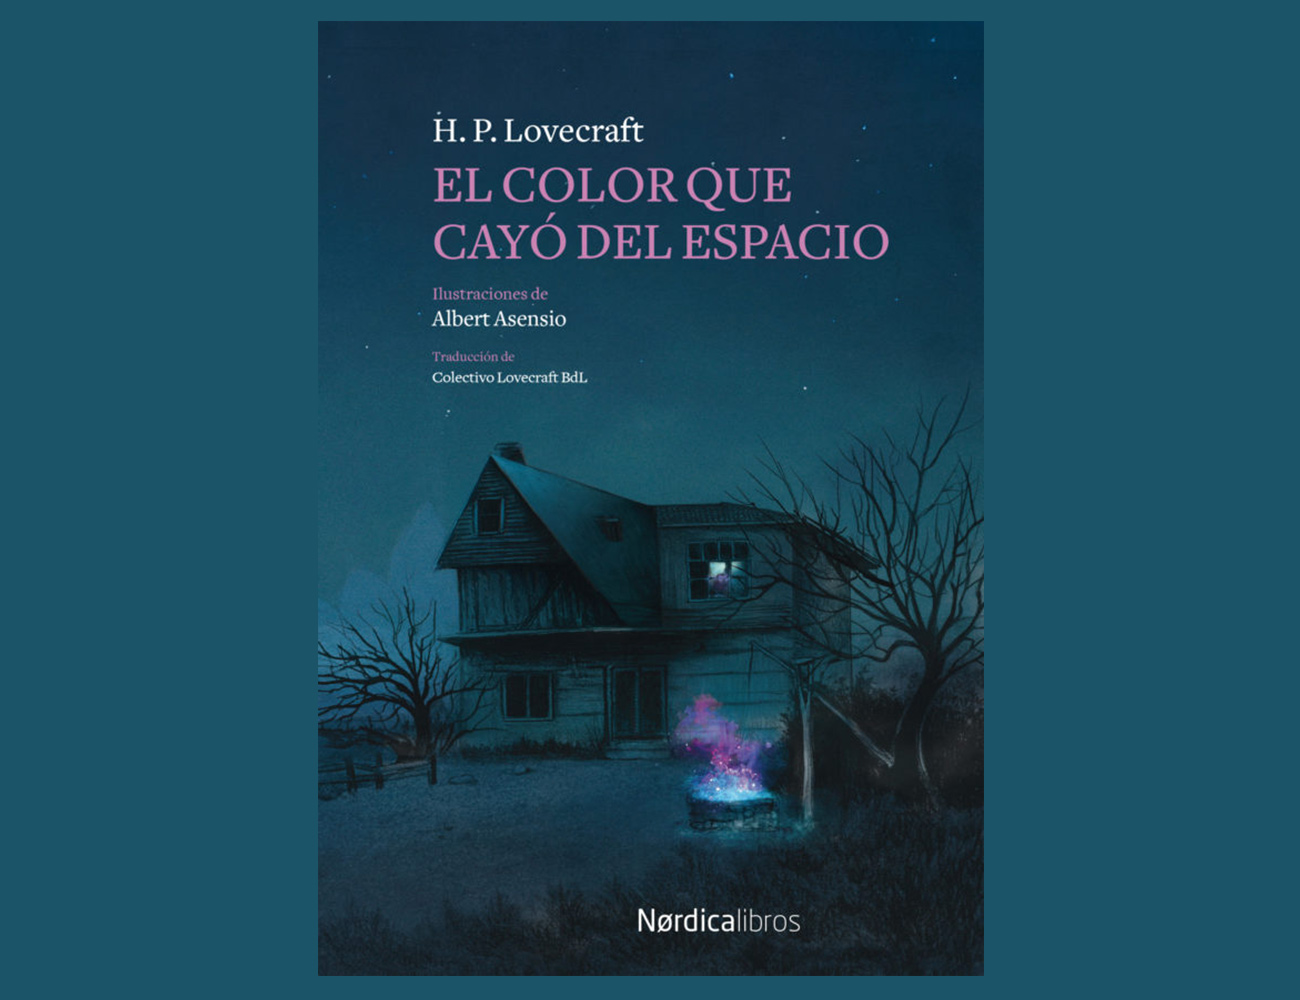 Lovecraft (y más que Lovecraft): ¿qué libros de terror te recomiendan los  editores para Halloween? - Further - The Objective